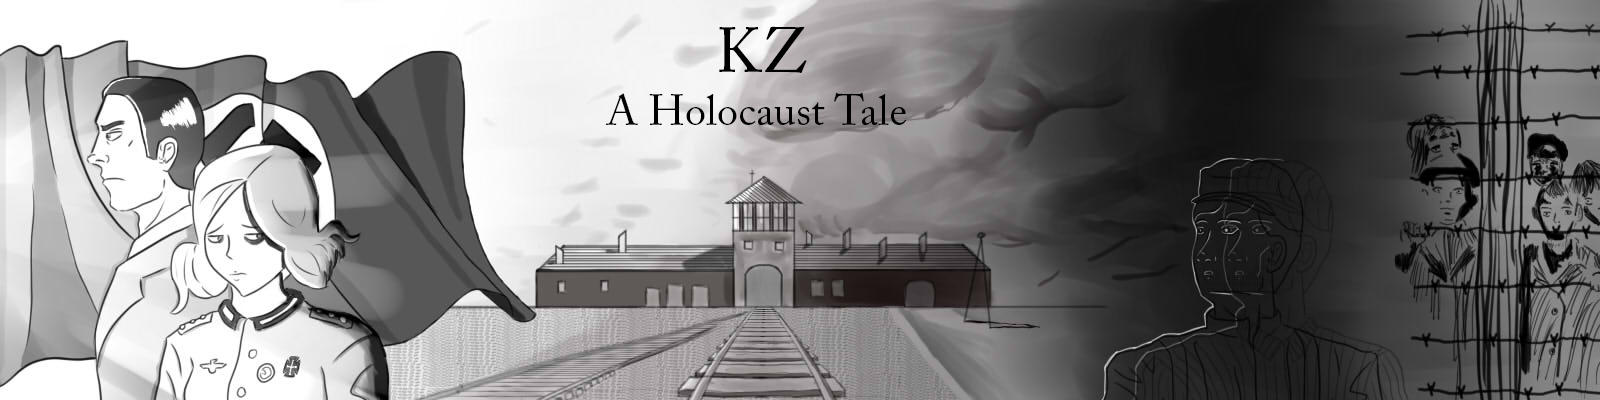 KZ: A Holocaust Tale DEMO